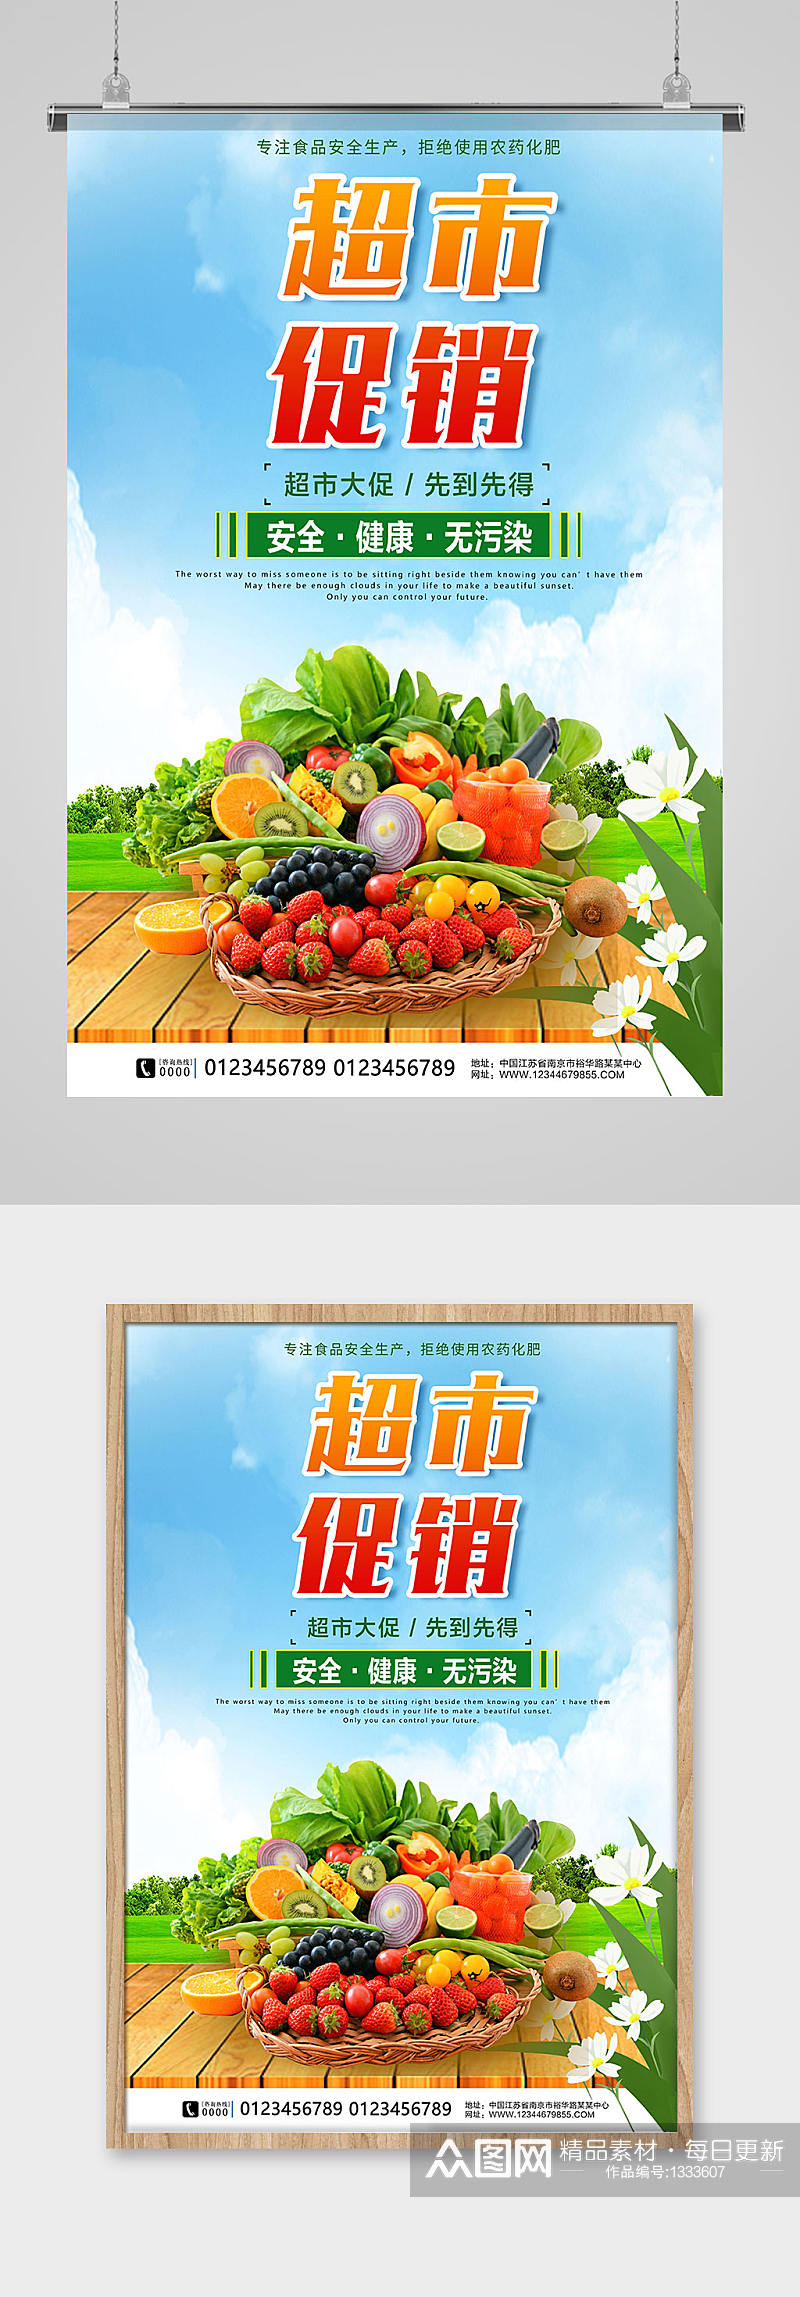 超市促销新鲜蔬菜水果海报素材